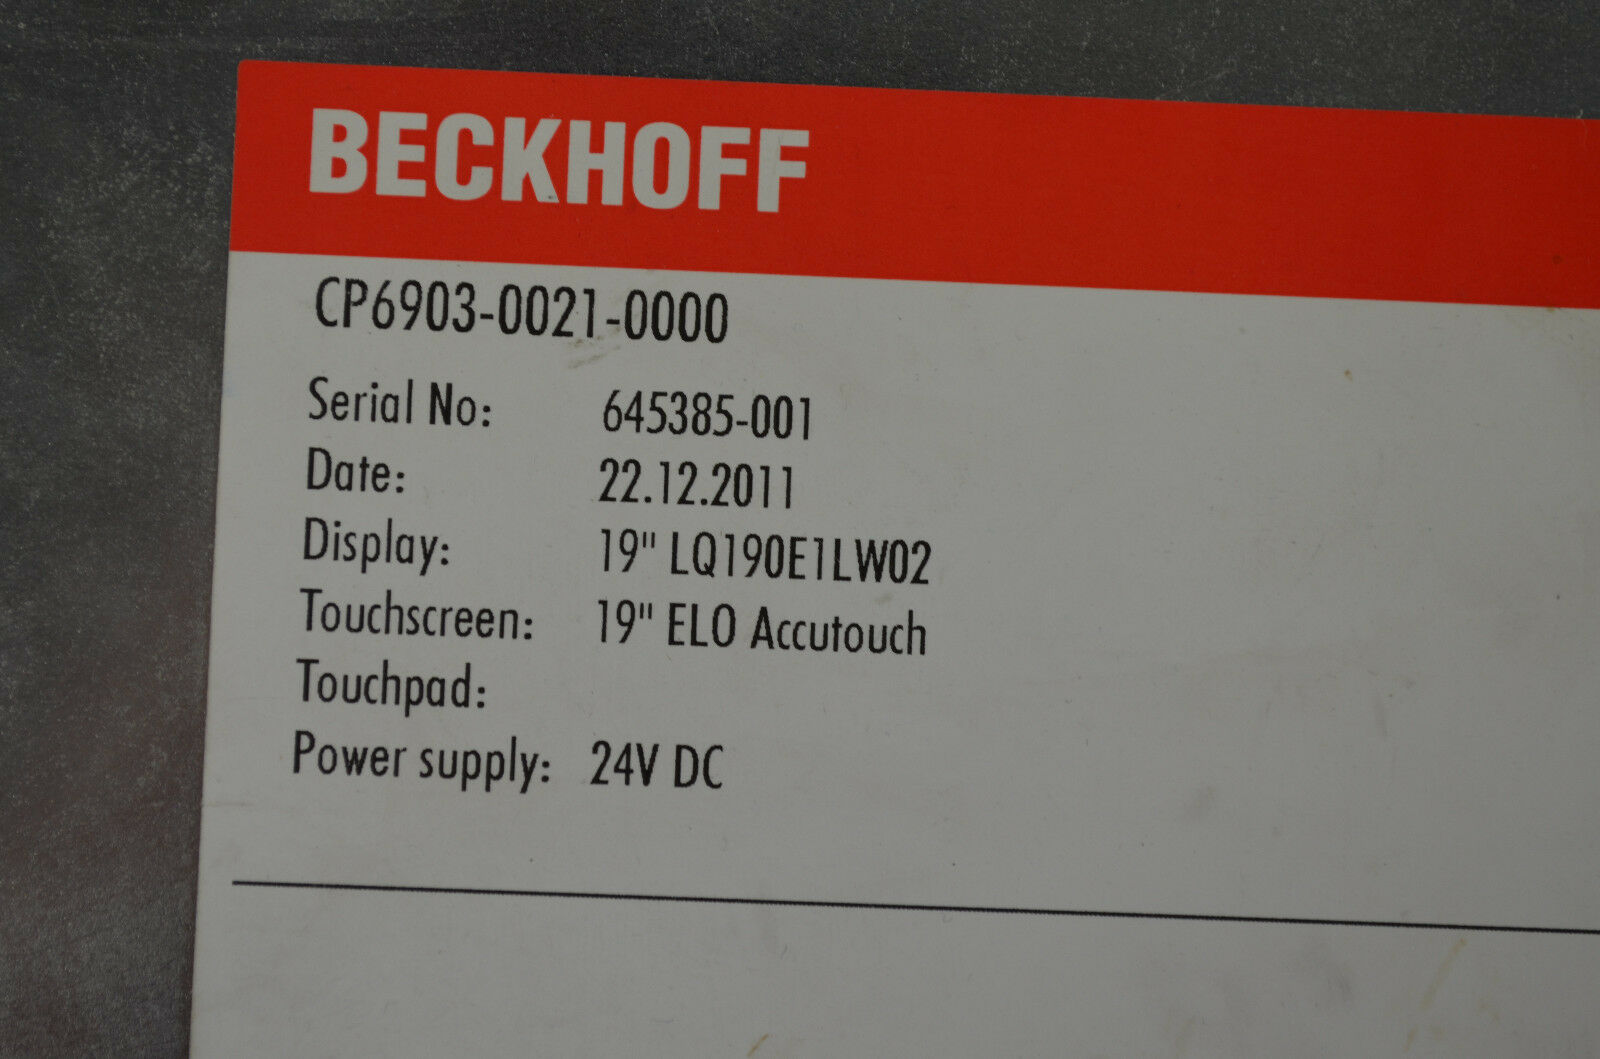 Beckhoff CP6903-0021-0000